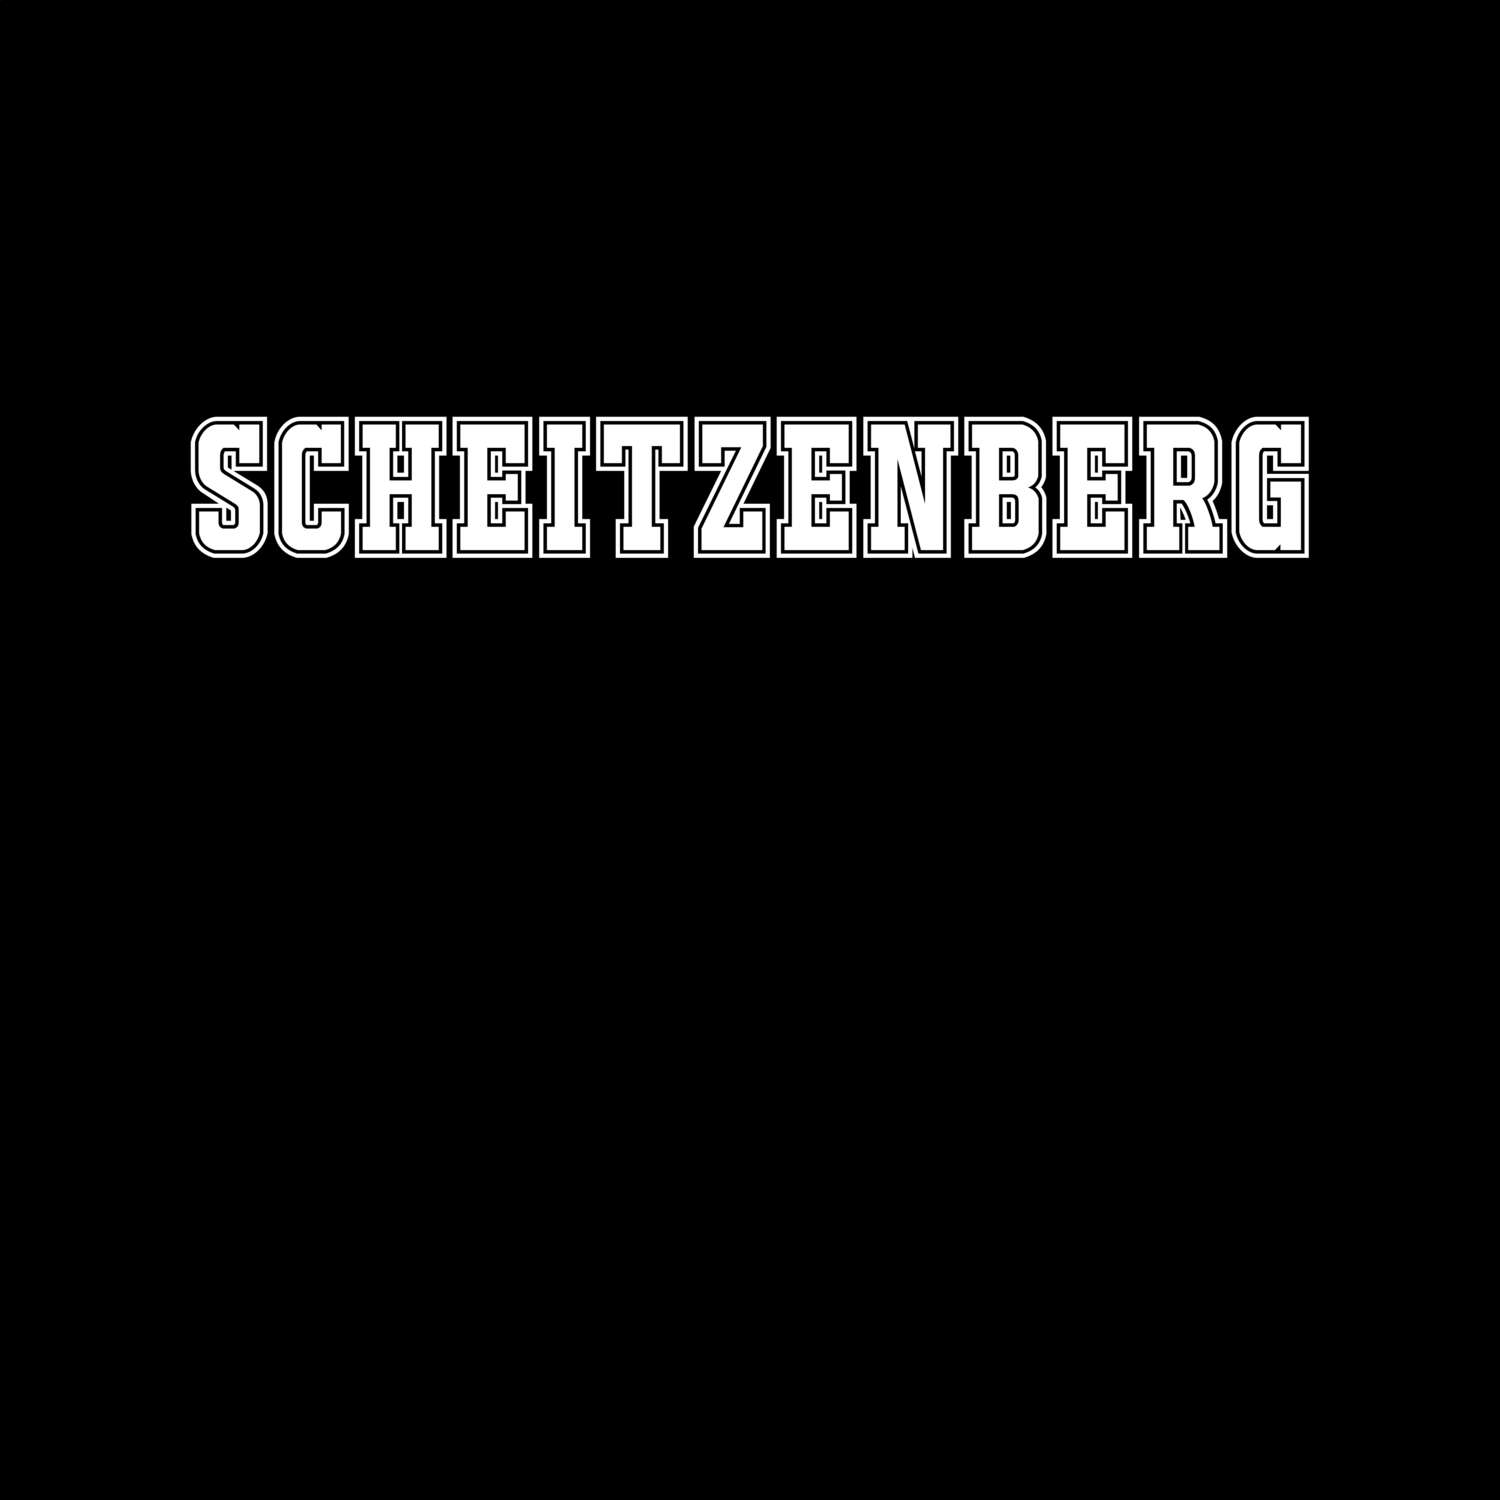 Scheitzenberg T-Shirt »Classic«